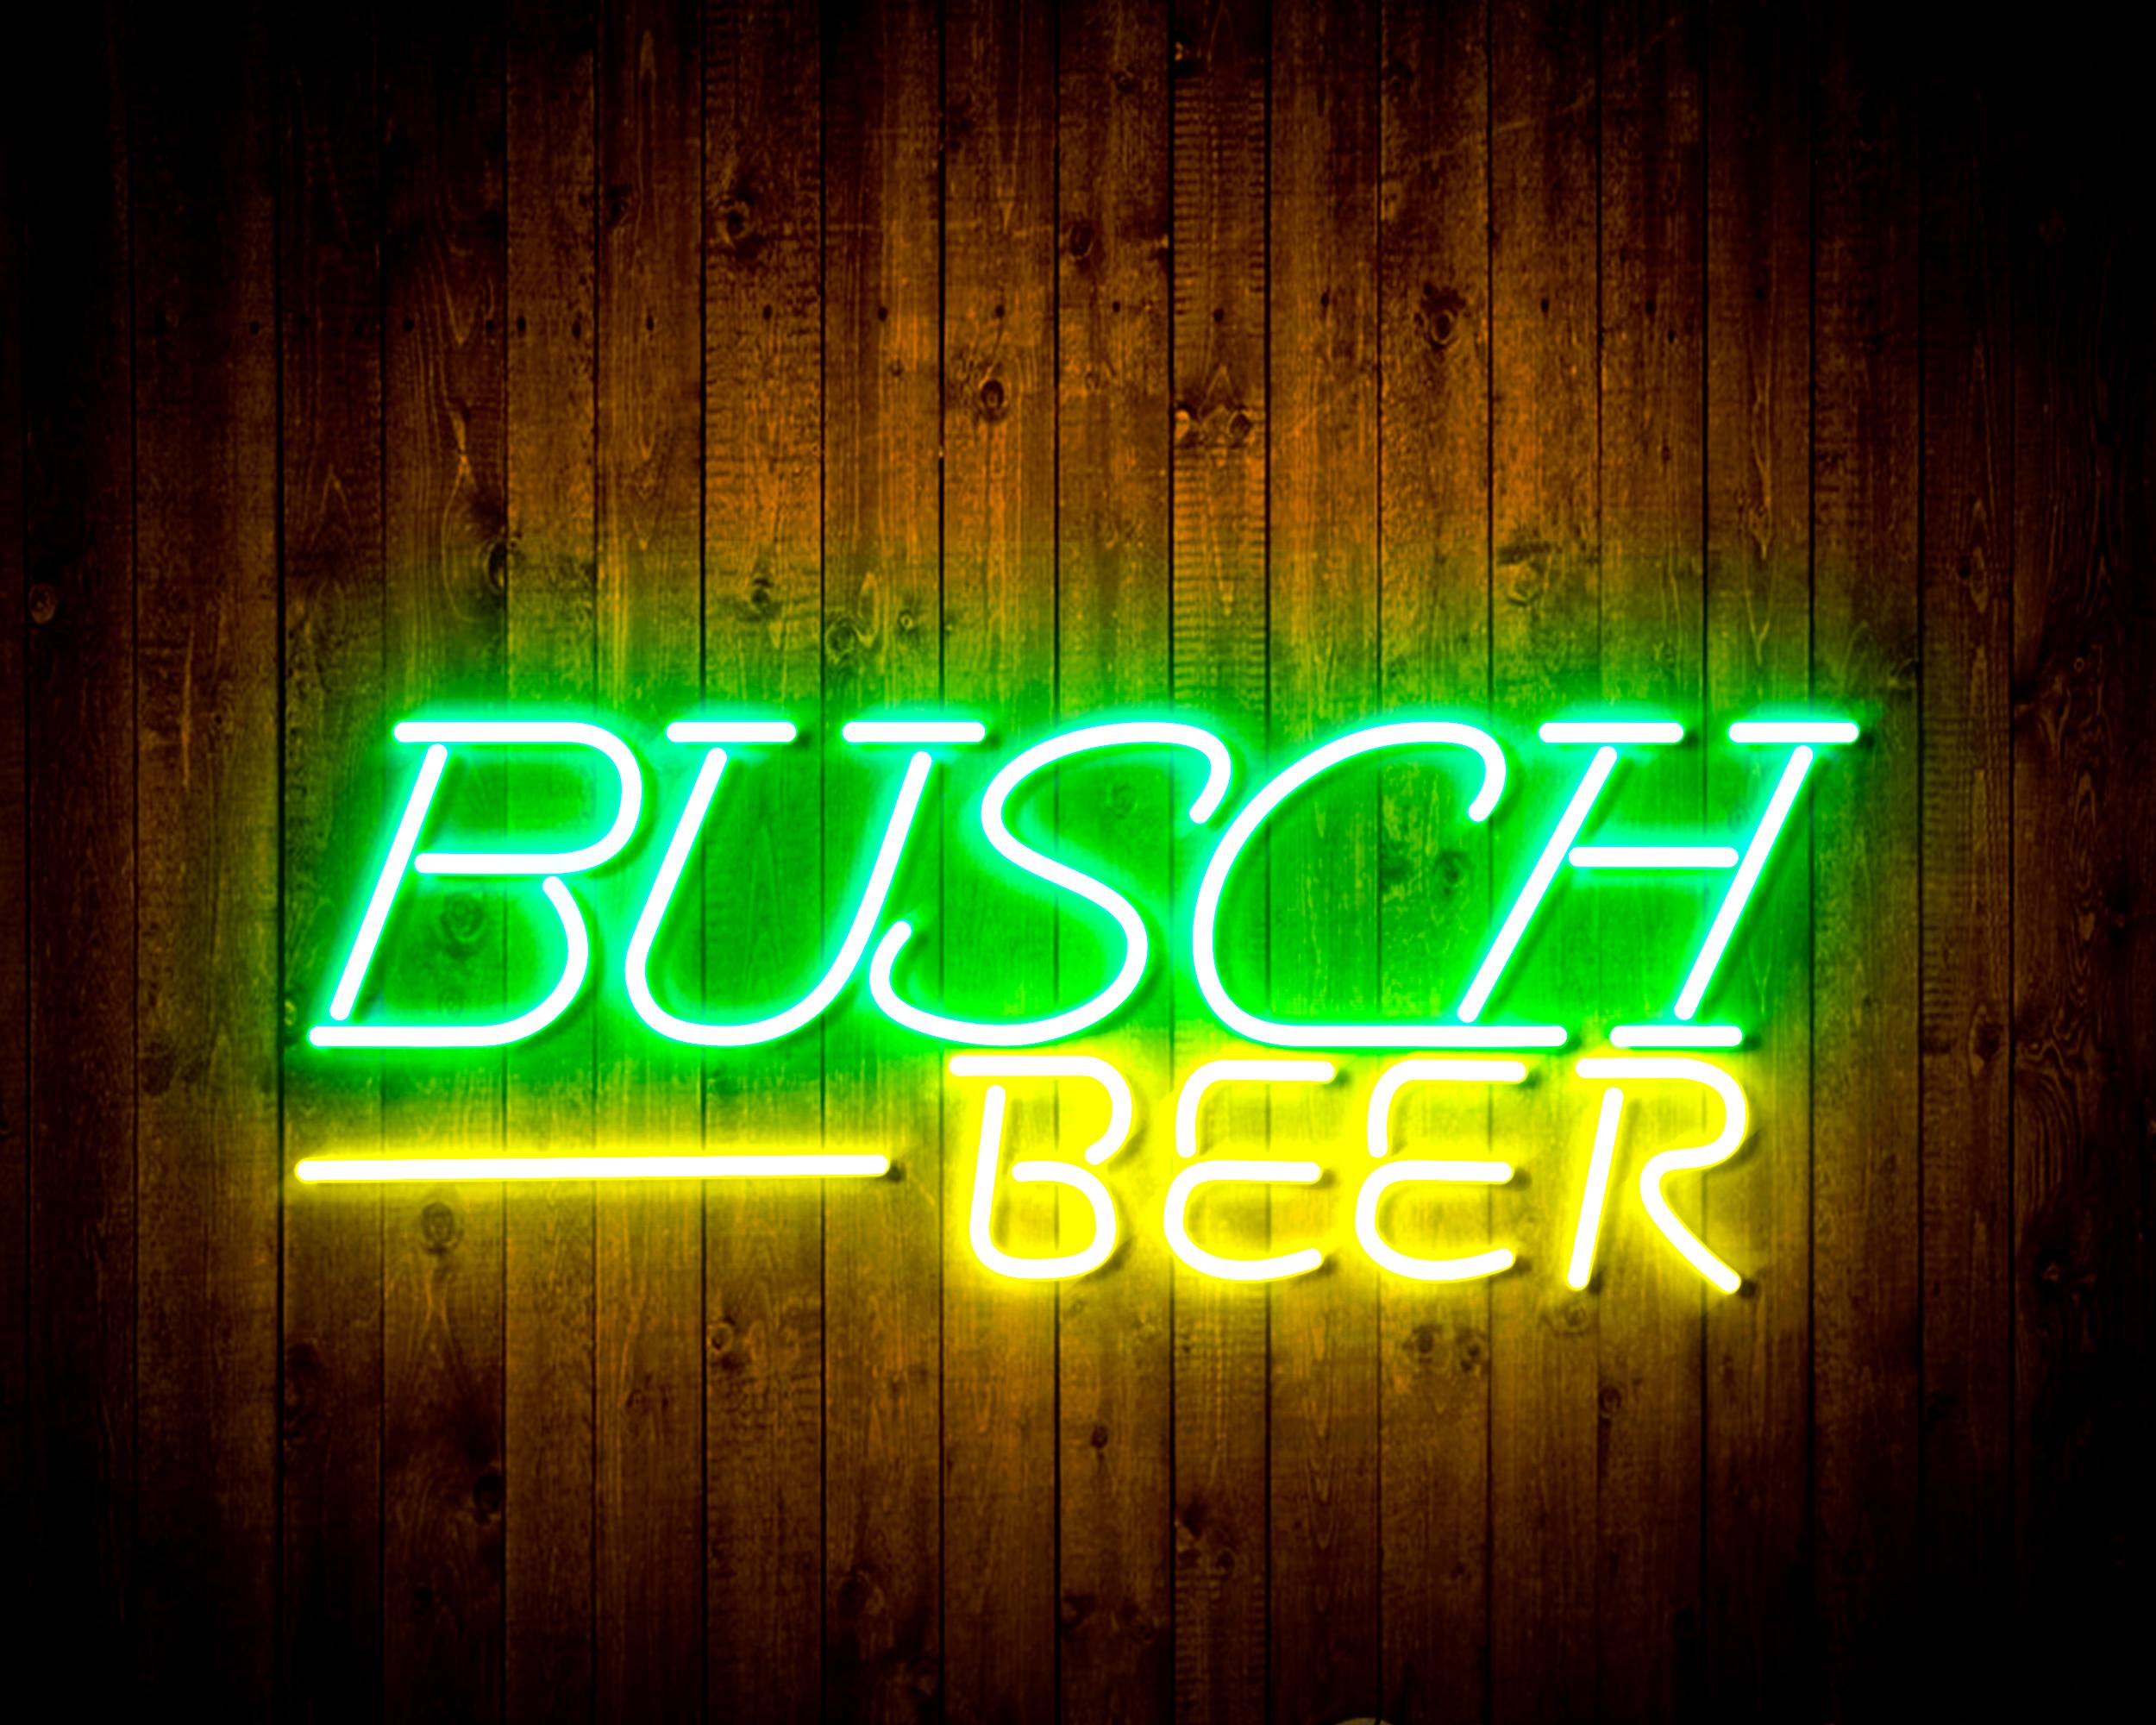 Busch Beer 2 Handmade Neon Flex LED Sign